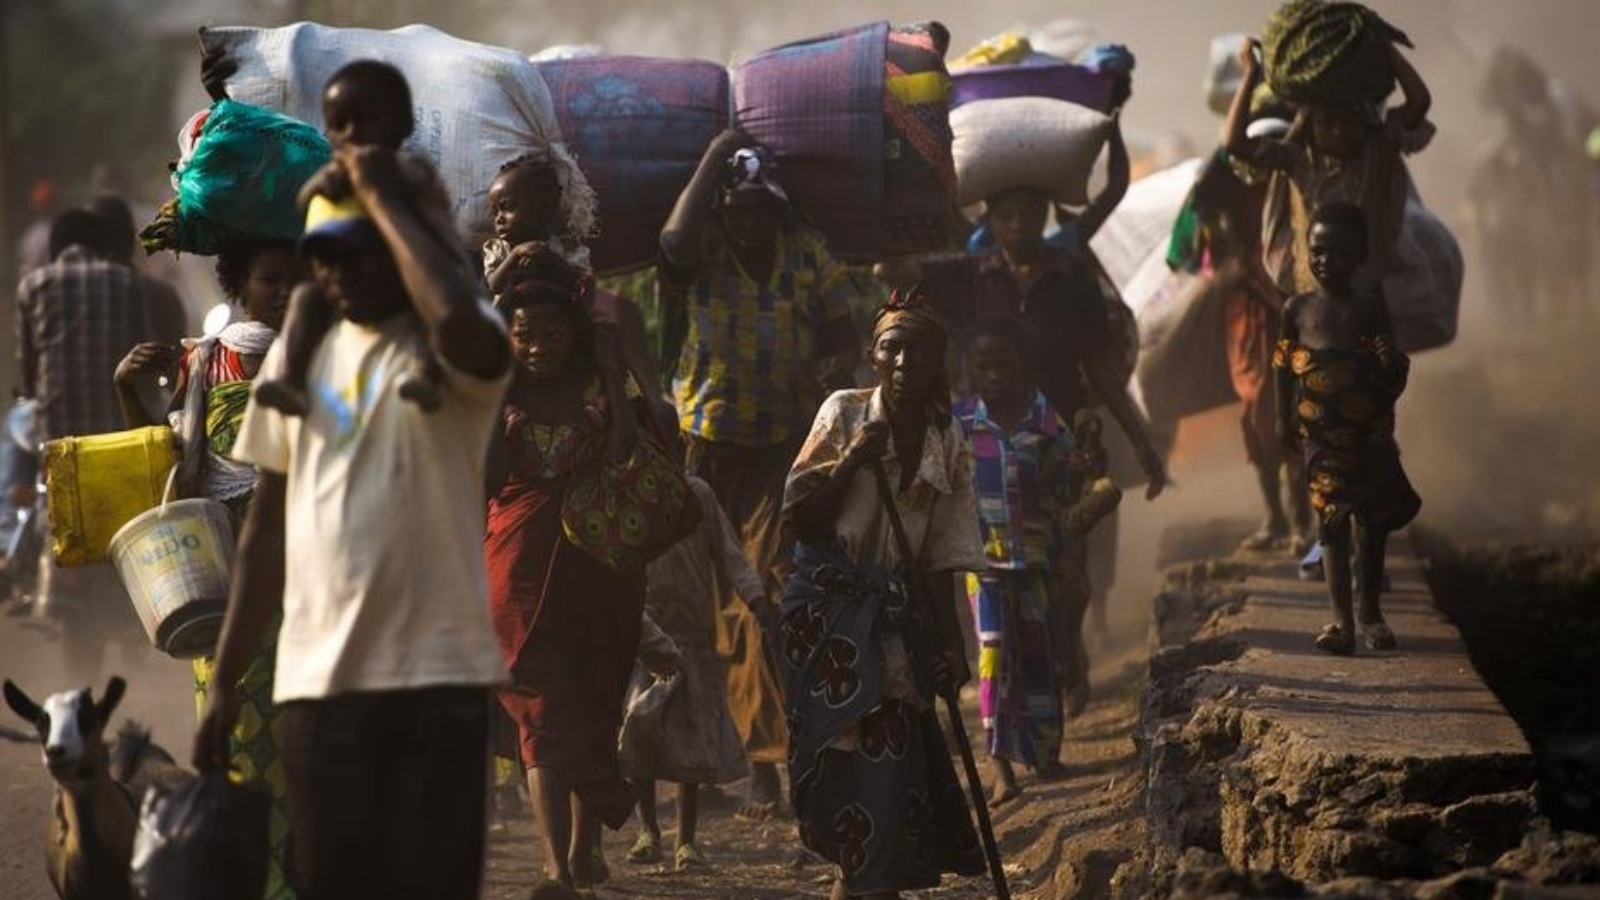 حتى قبل الوباء، كانت الأمم المتحدة قلقة بشأن تفاقم مشكلة الجوع في العالم